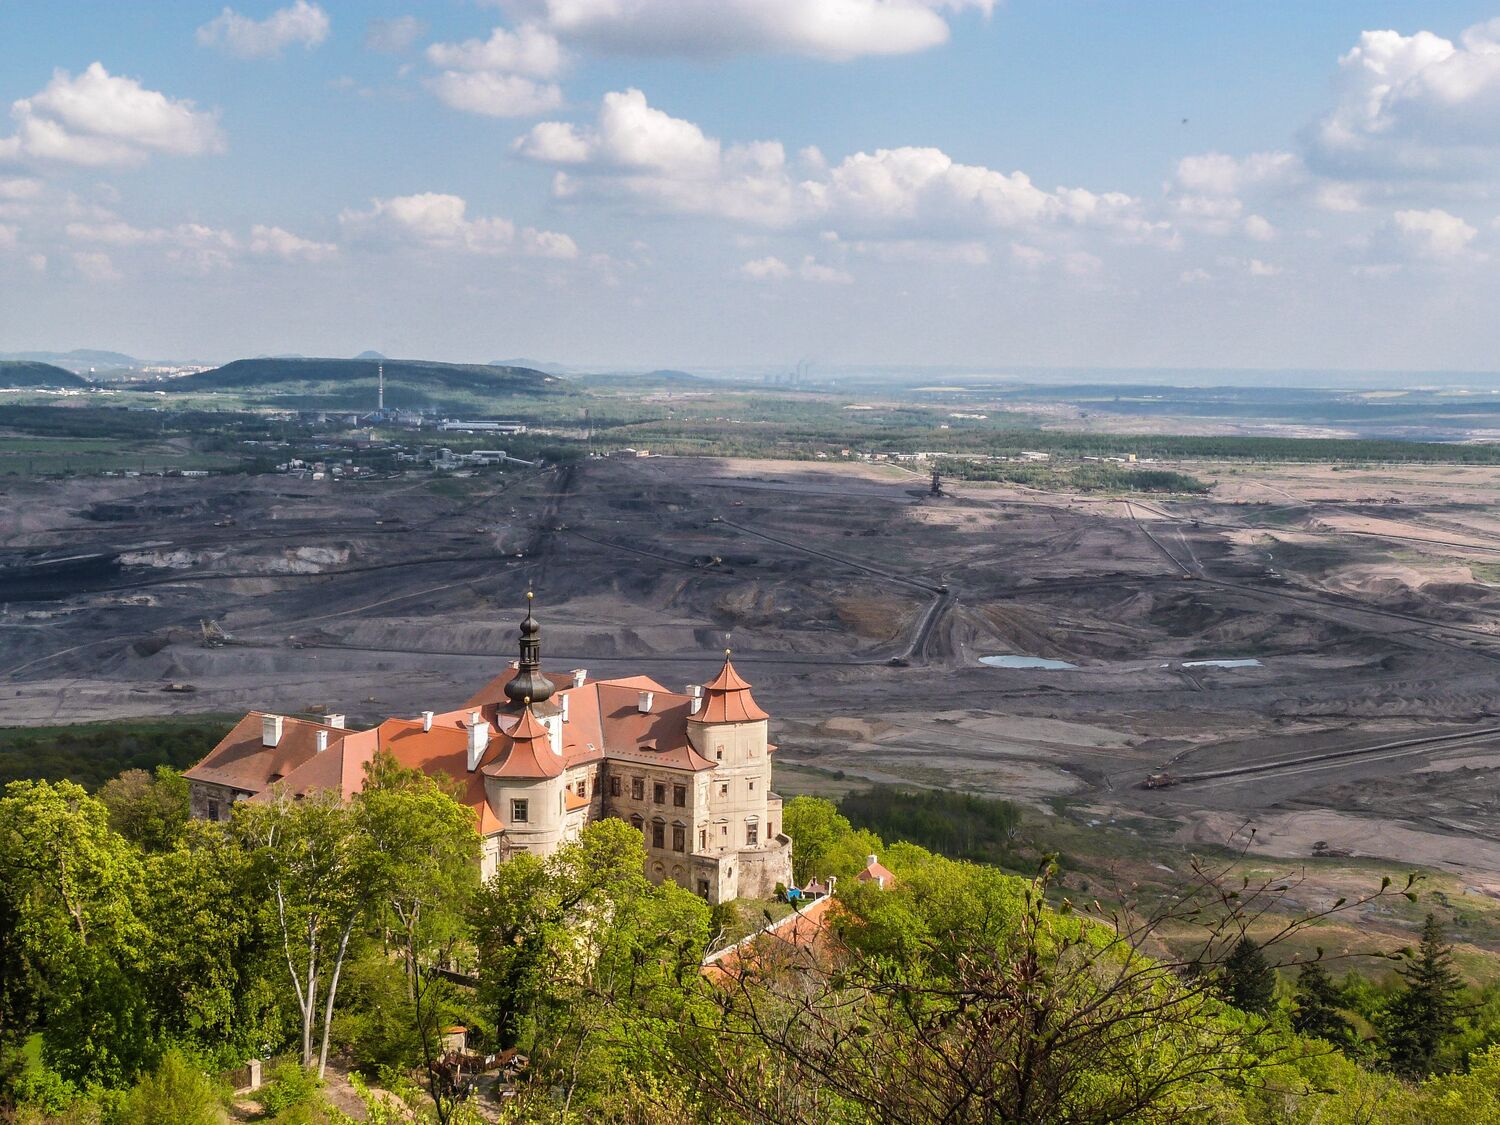 Die Burg Jezeří in der Tschechischen Republik ist ein Kulturerbe,  das am Rande eines Bergwerks liegt und vor dem Abriss durch den Bergbau bewahrt wurde. Seine Erhaltung ist ein wichtiger Teil des regionalen Übergangs weg vom Bergbau.